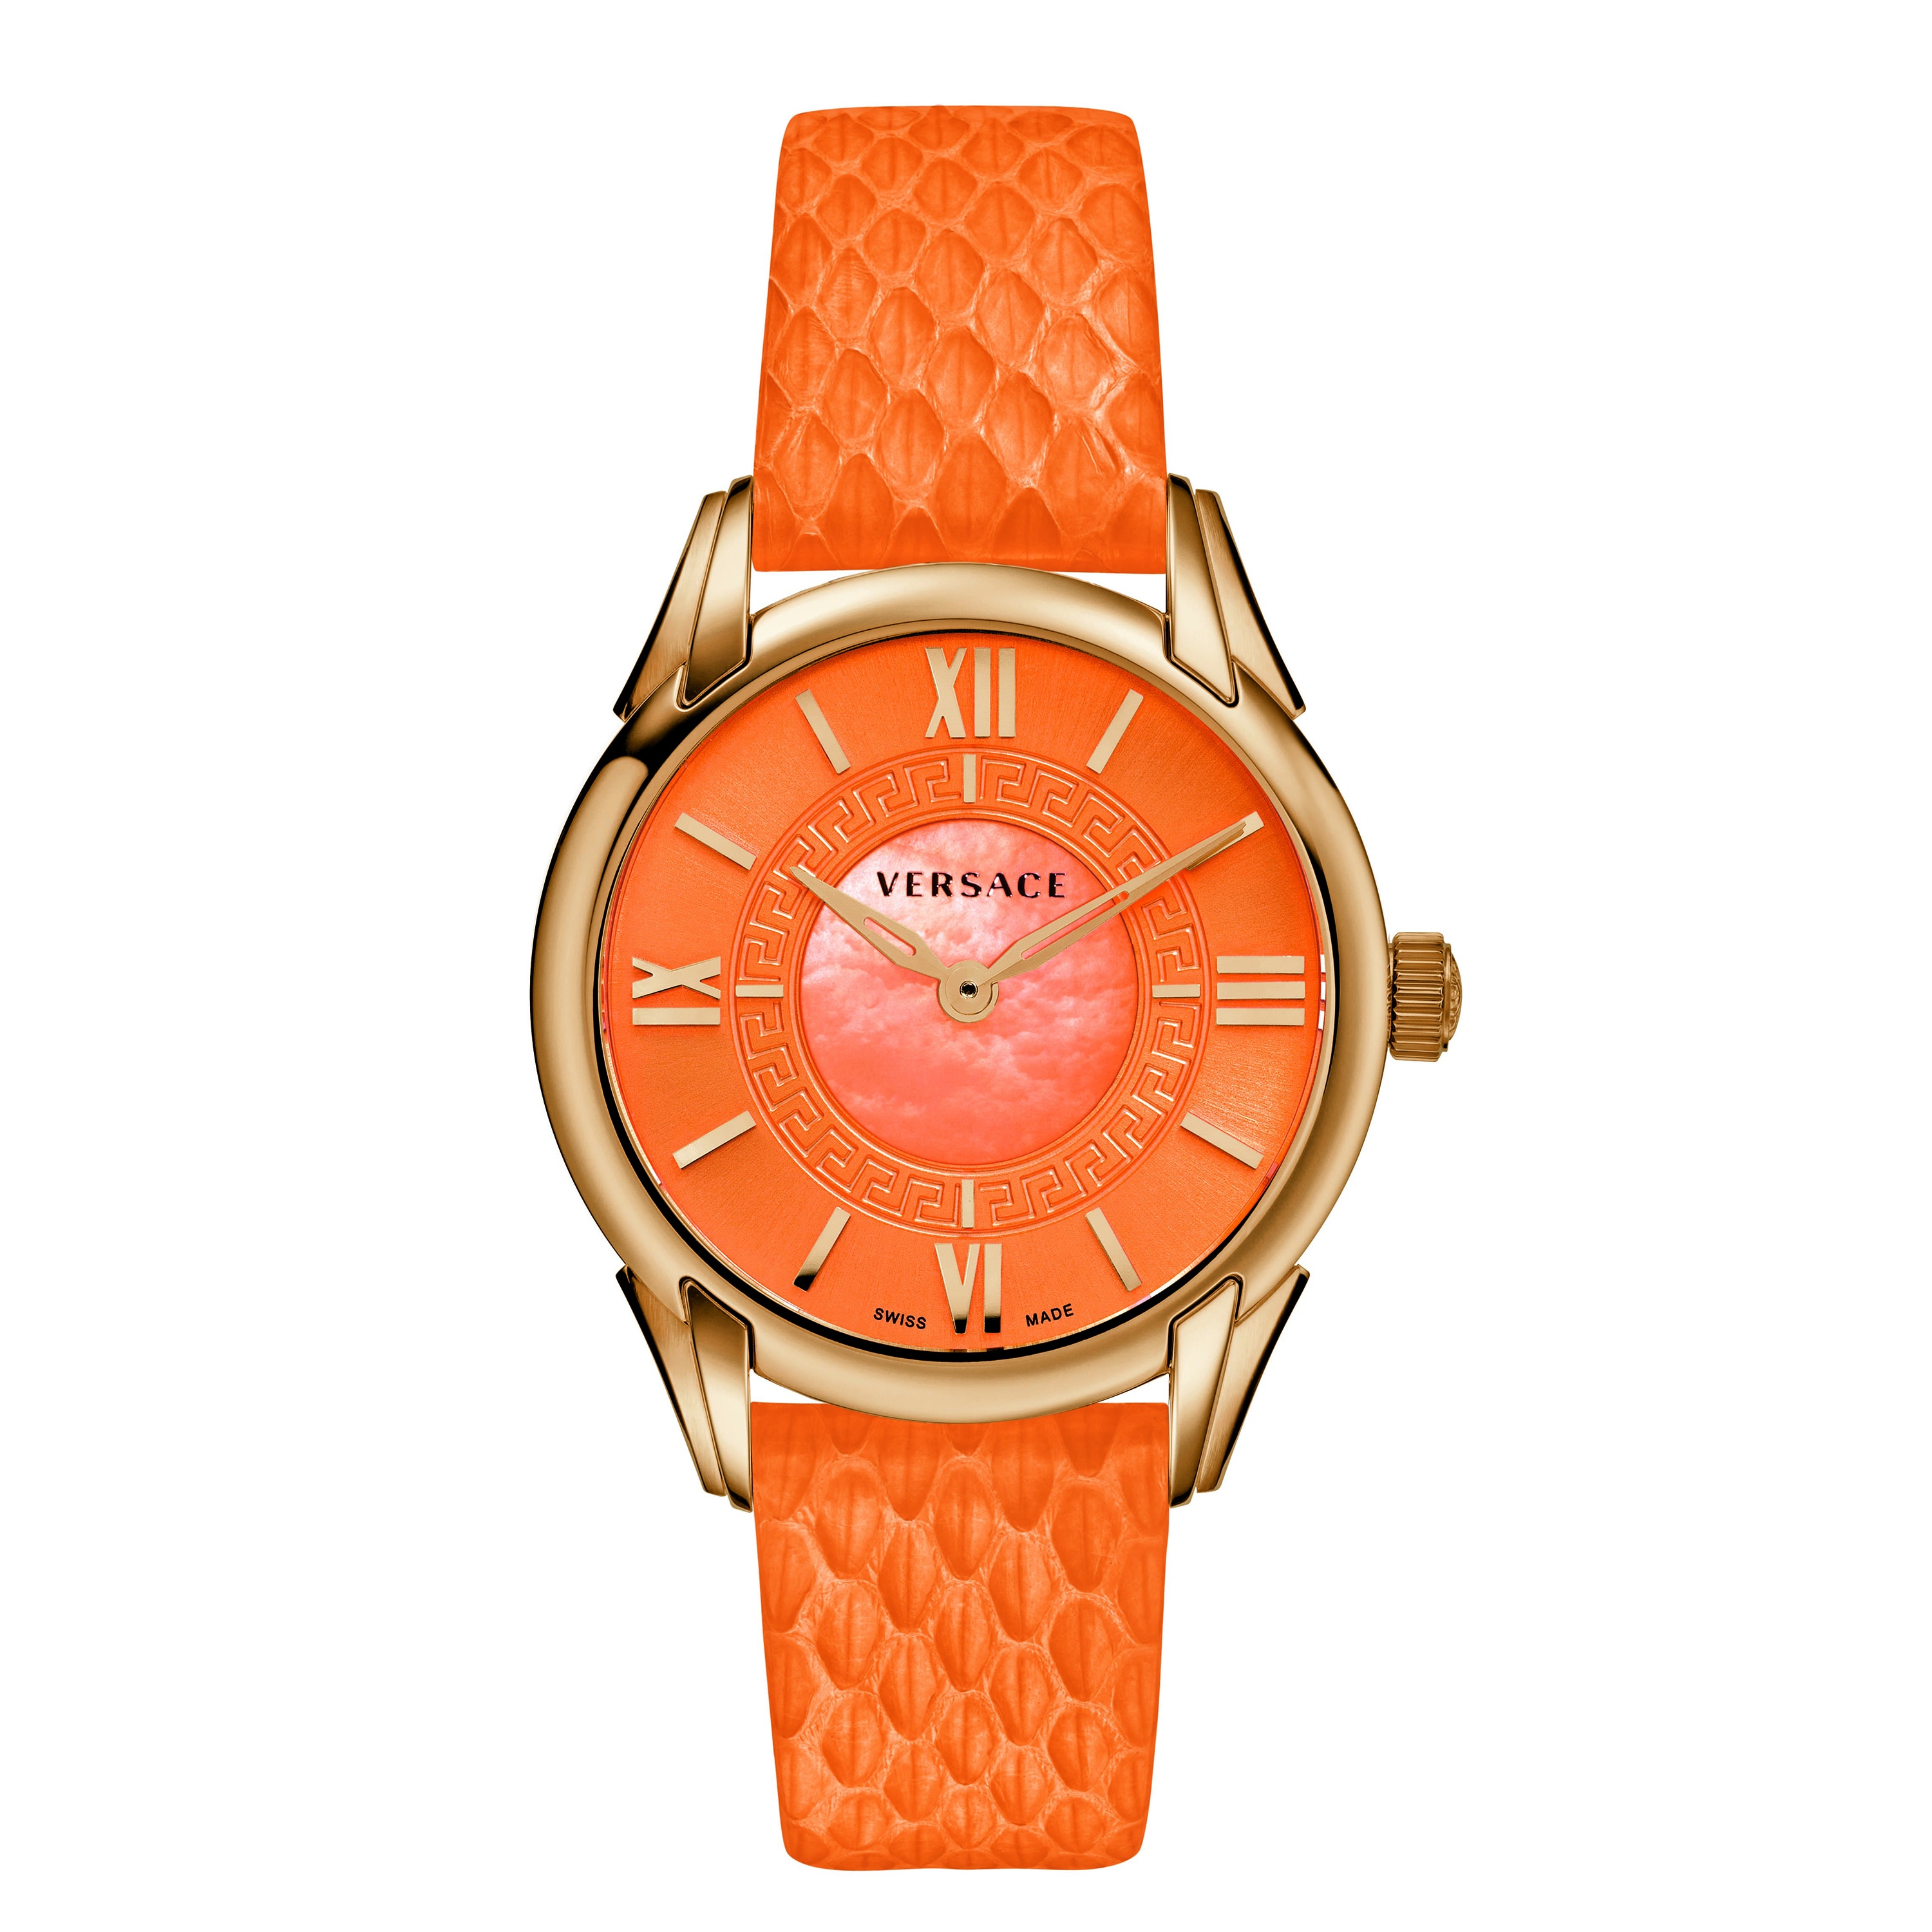 Versace Women's DAFNE Orange Watch 